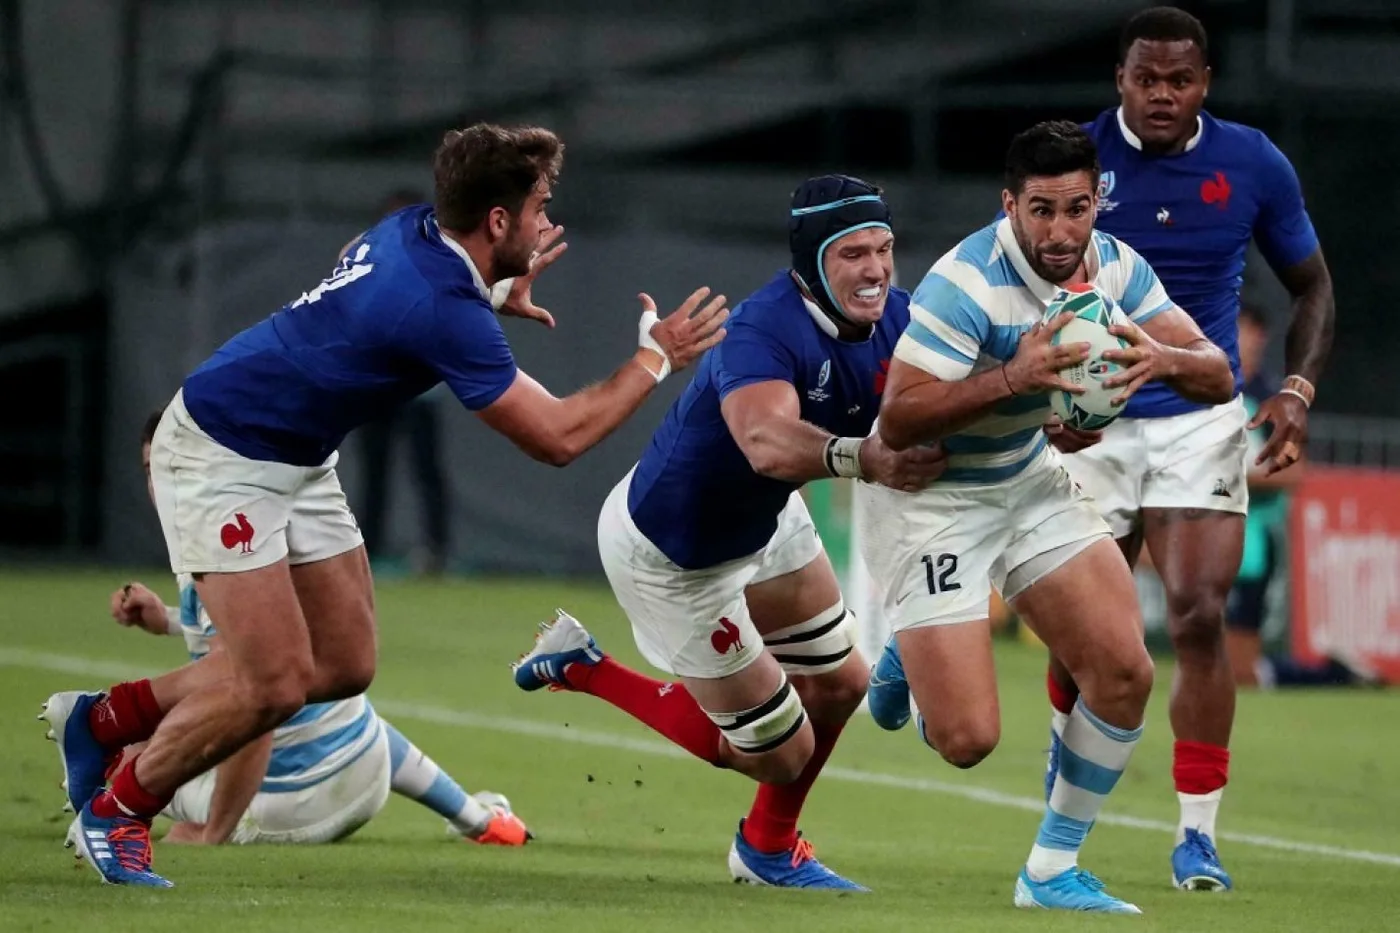 World Rugby anunció 10 variaciones en las reglas para mayor bienestar de los jugadores